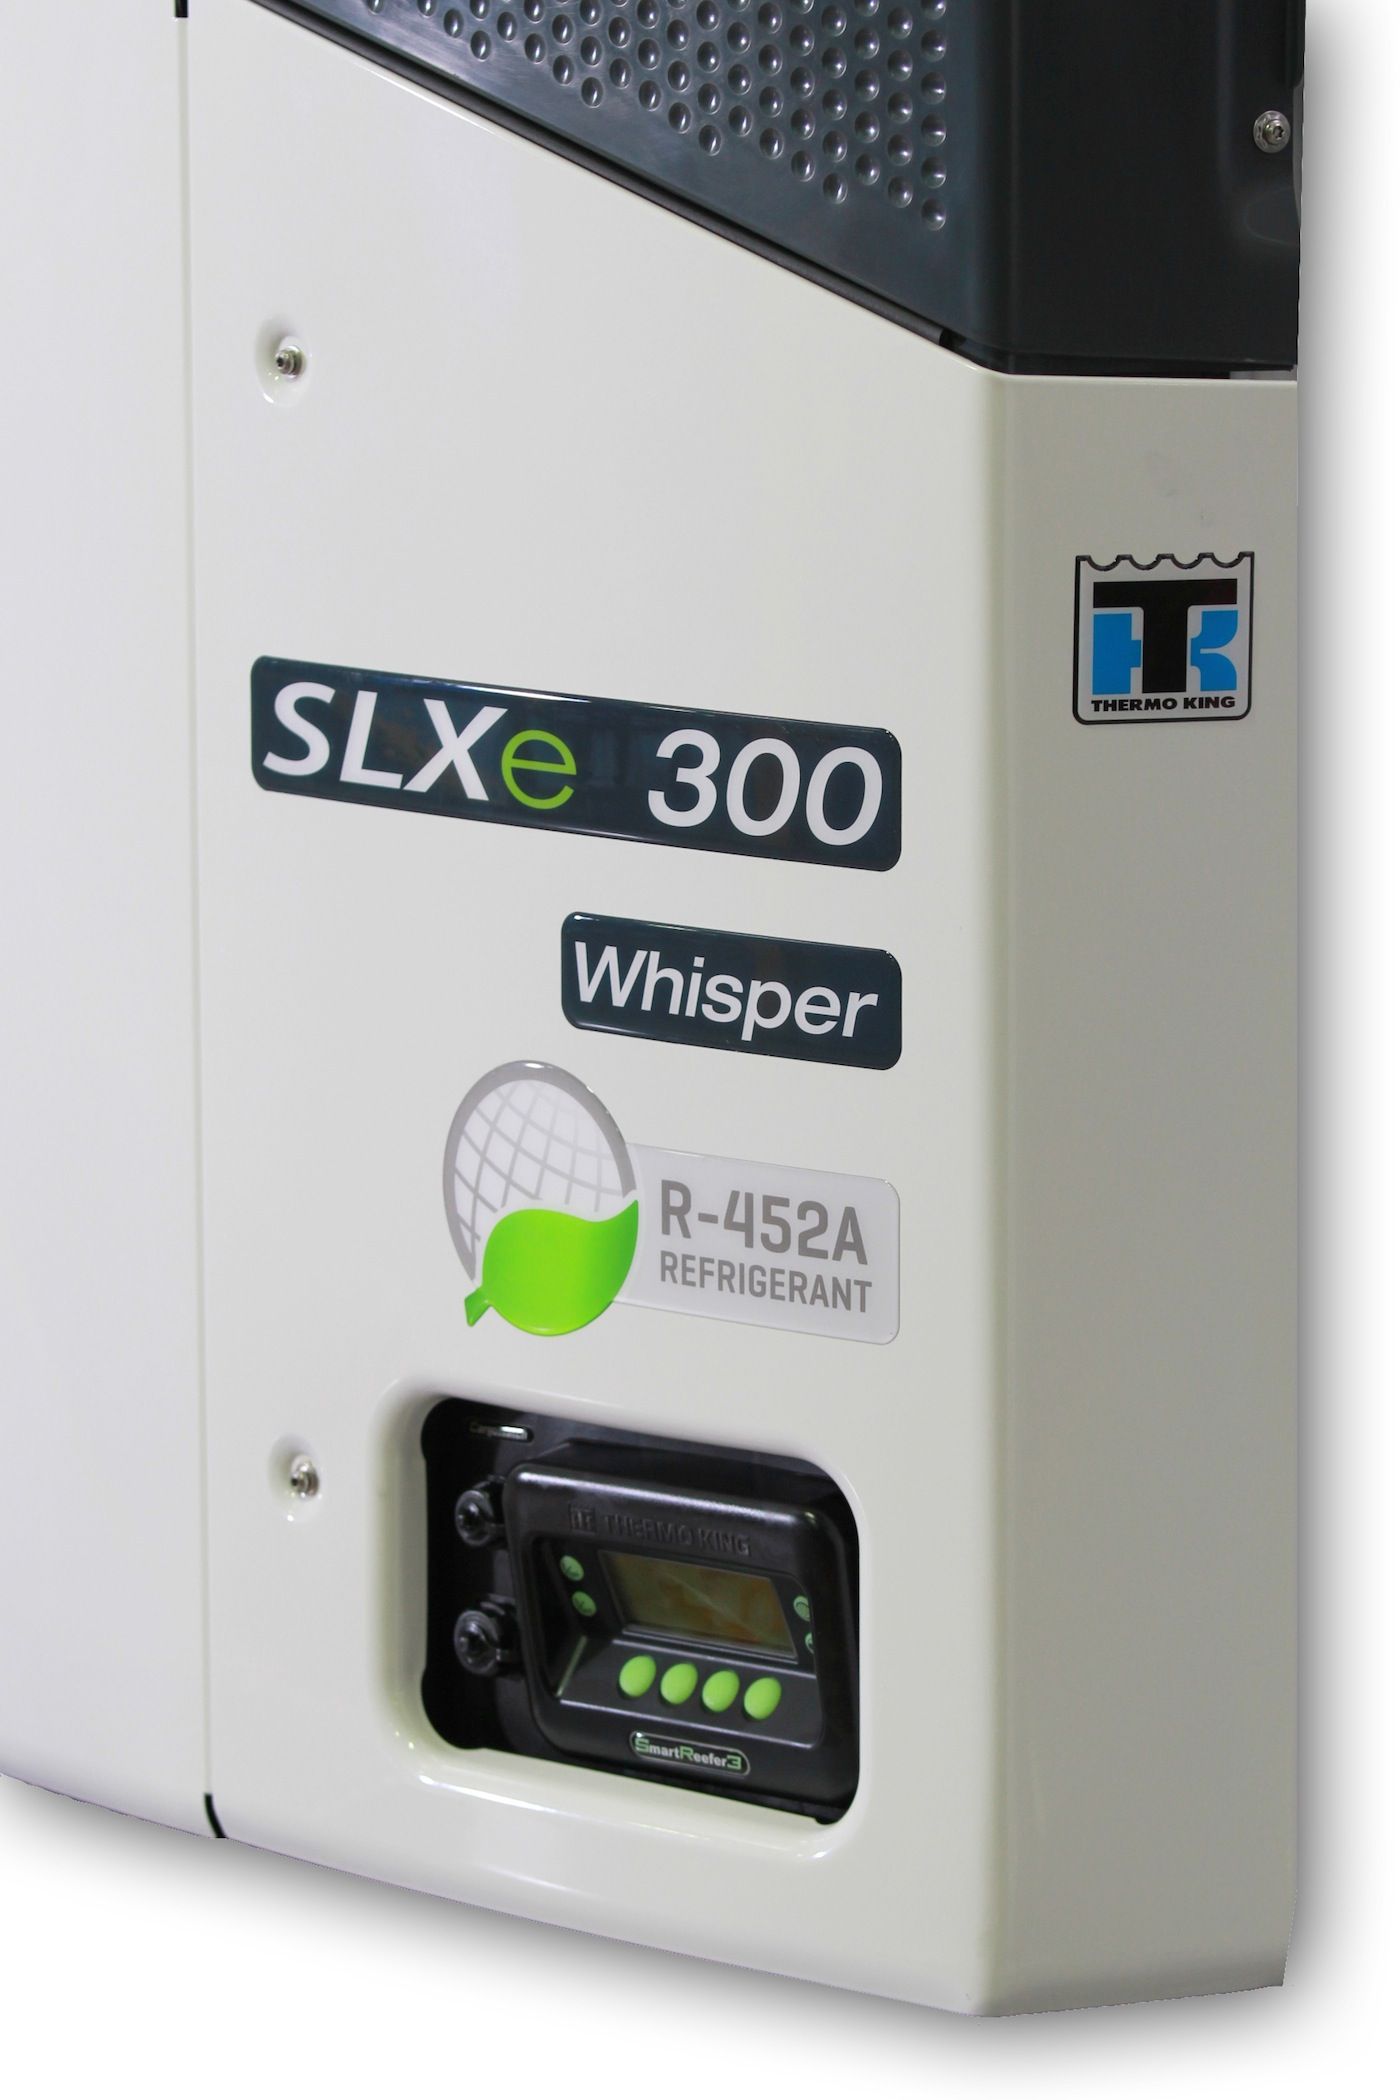 Thermo King desarrolla la unidad SLXe, compatible con el refrigerante R-452A de próxima generación